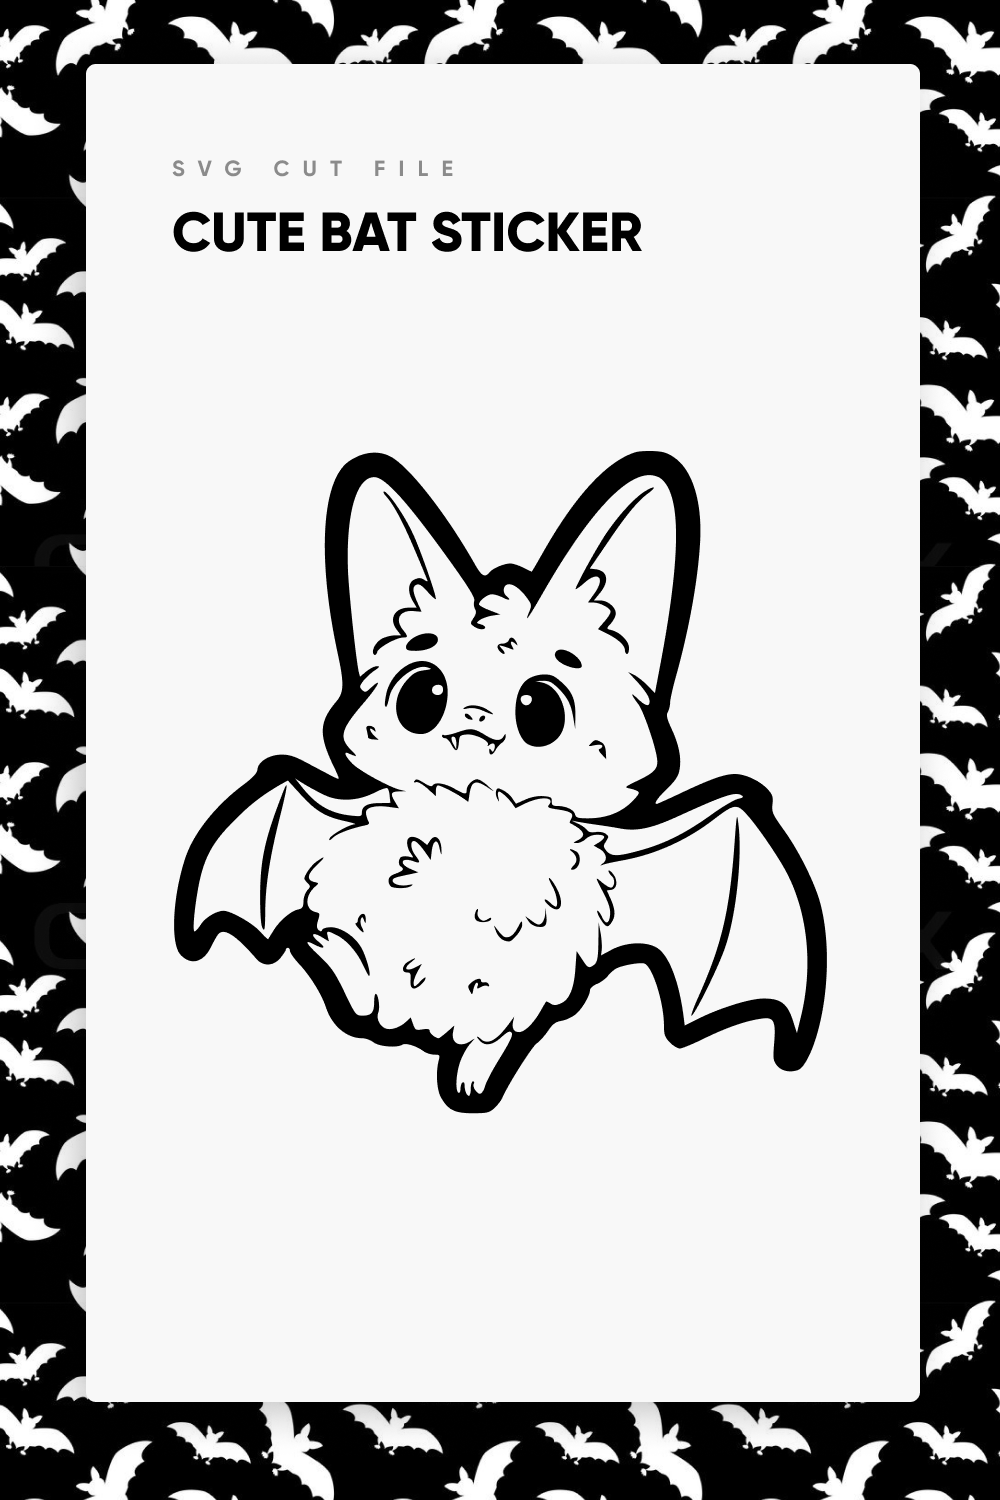 So cute black bat.